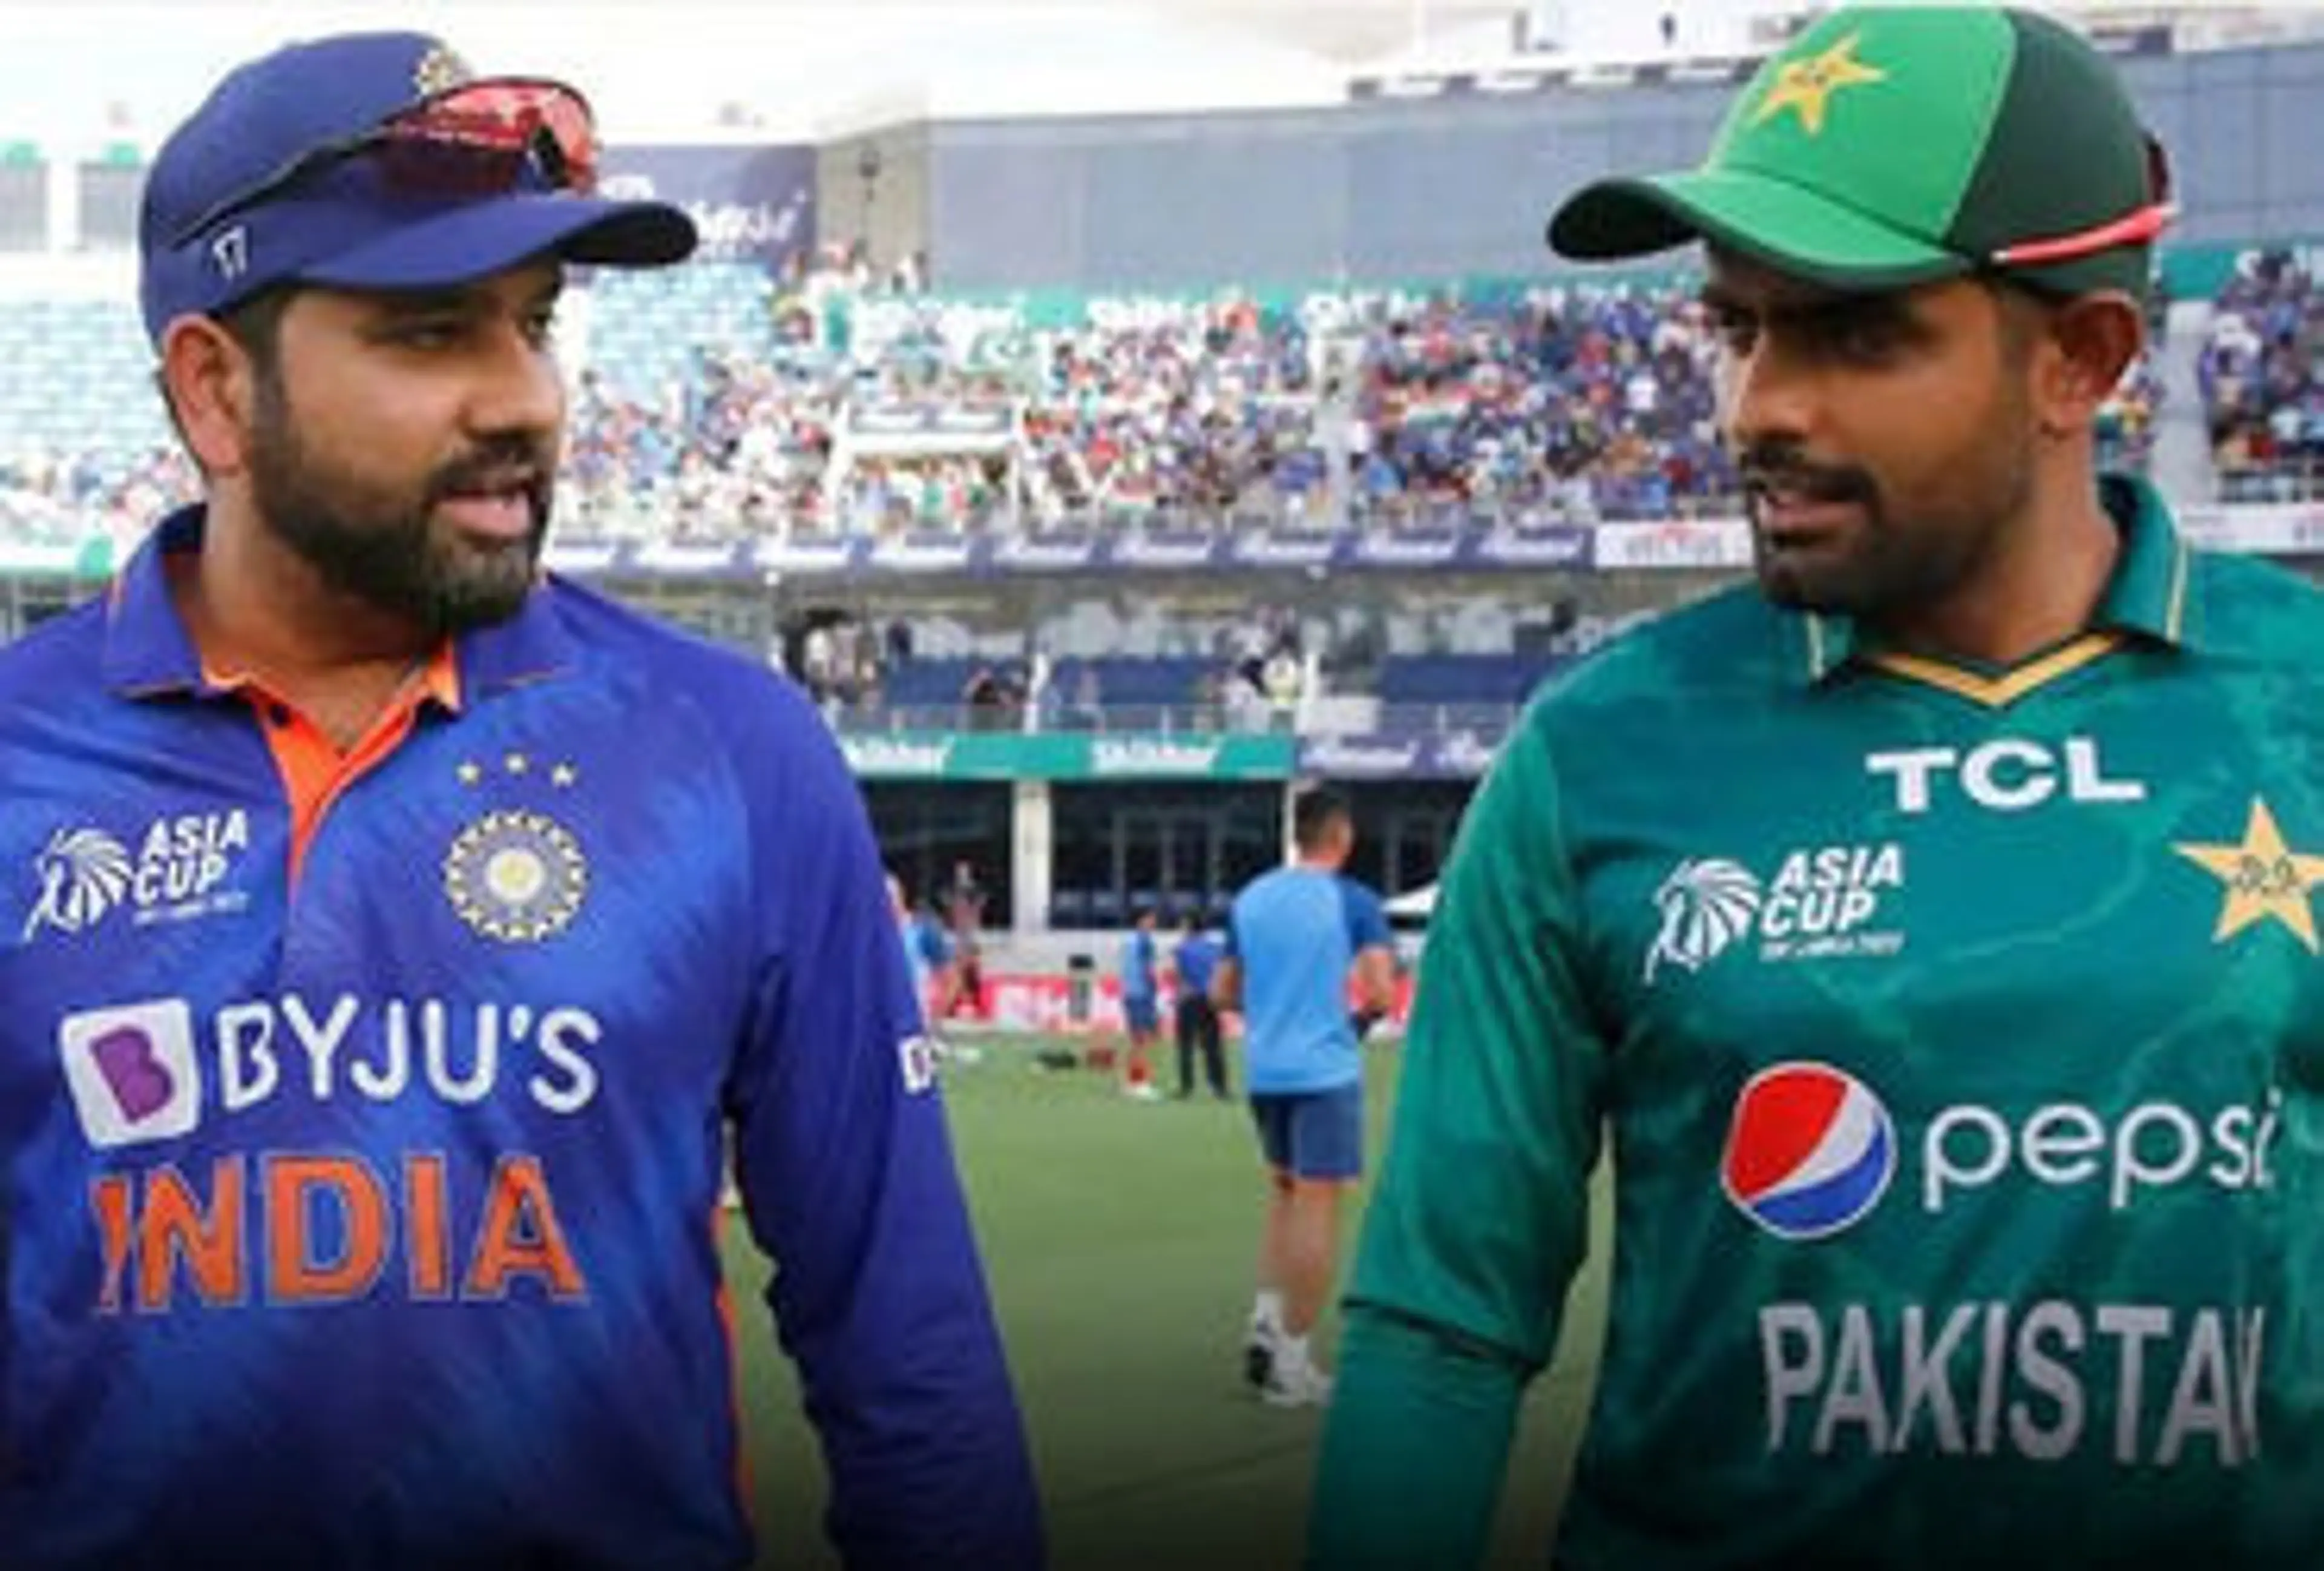 પાકિસ્તાન ક્રિકેટ બોર્ડને ઝટકો, એશિયા કપની યજમાની છીનવાઈ, નવા સ્થળ અંગે ACC નિર્ણય કરશે